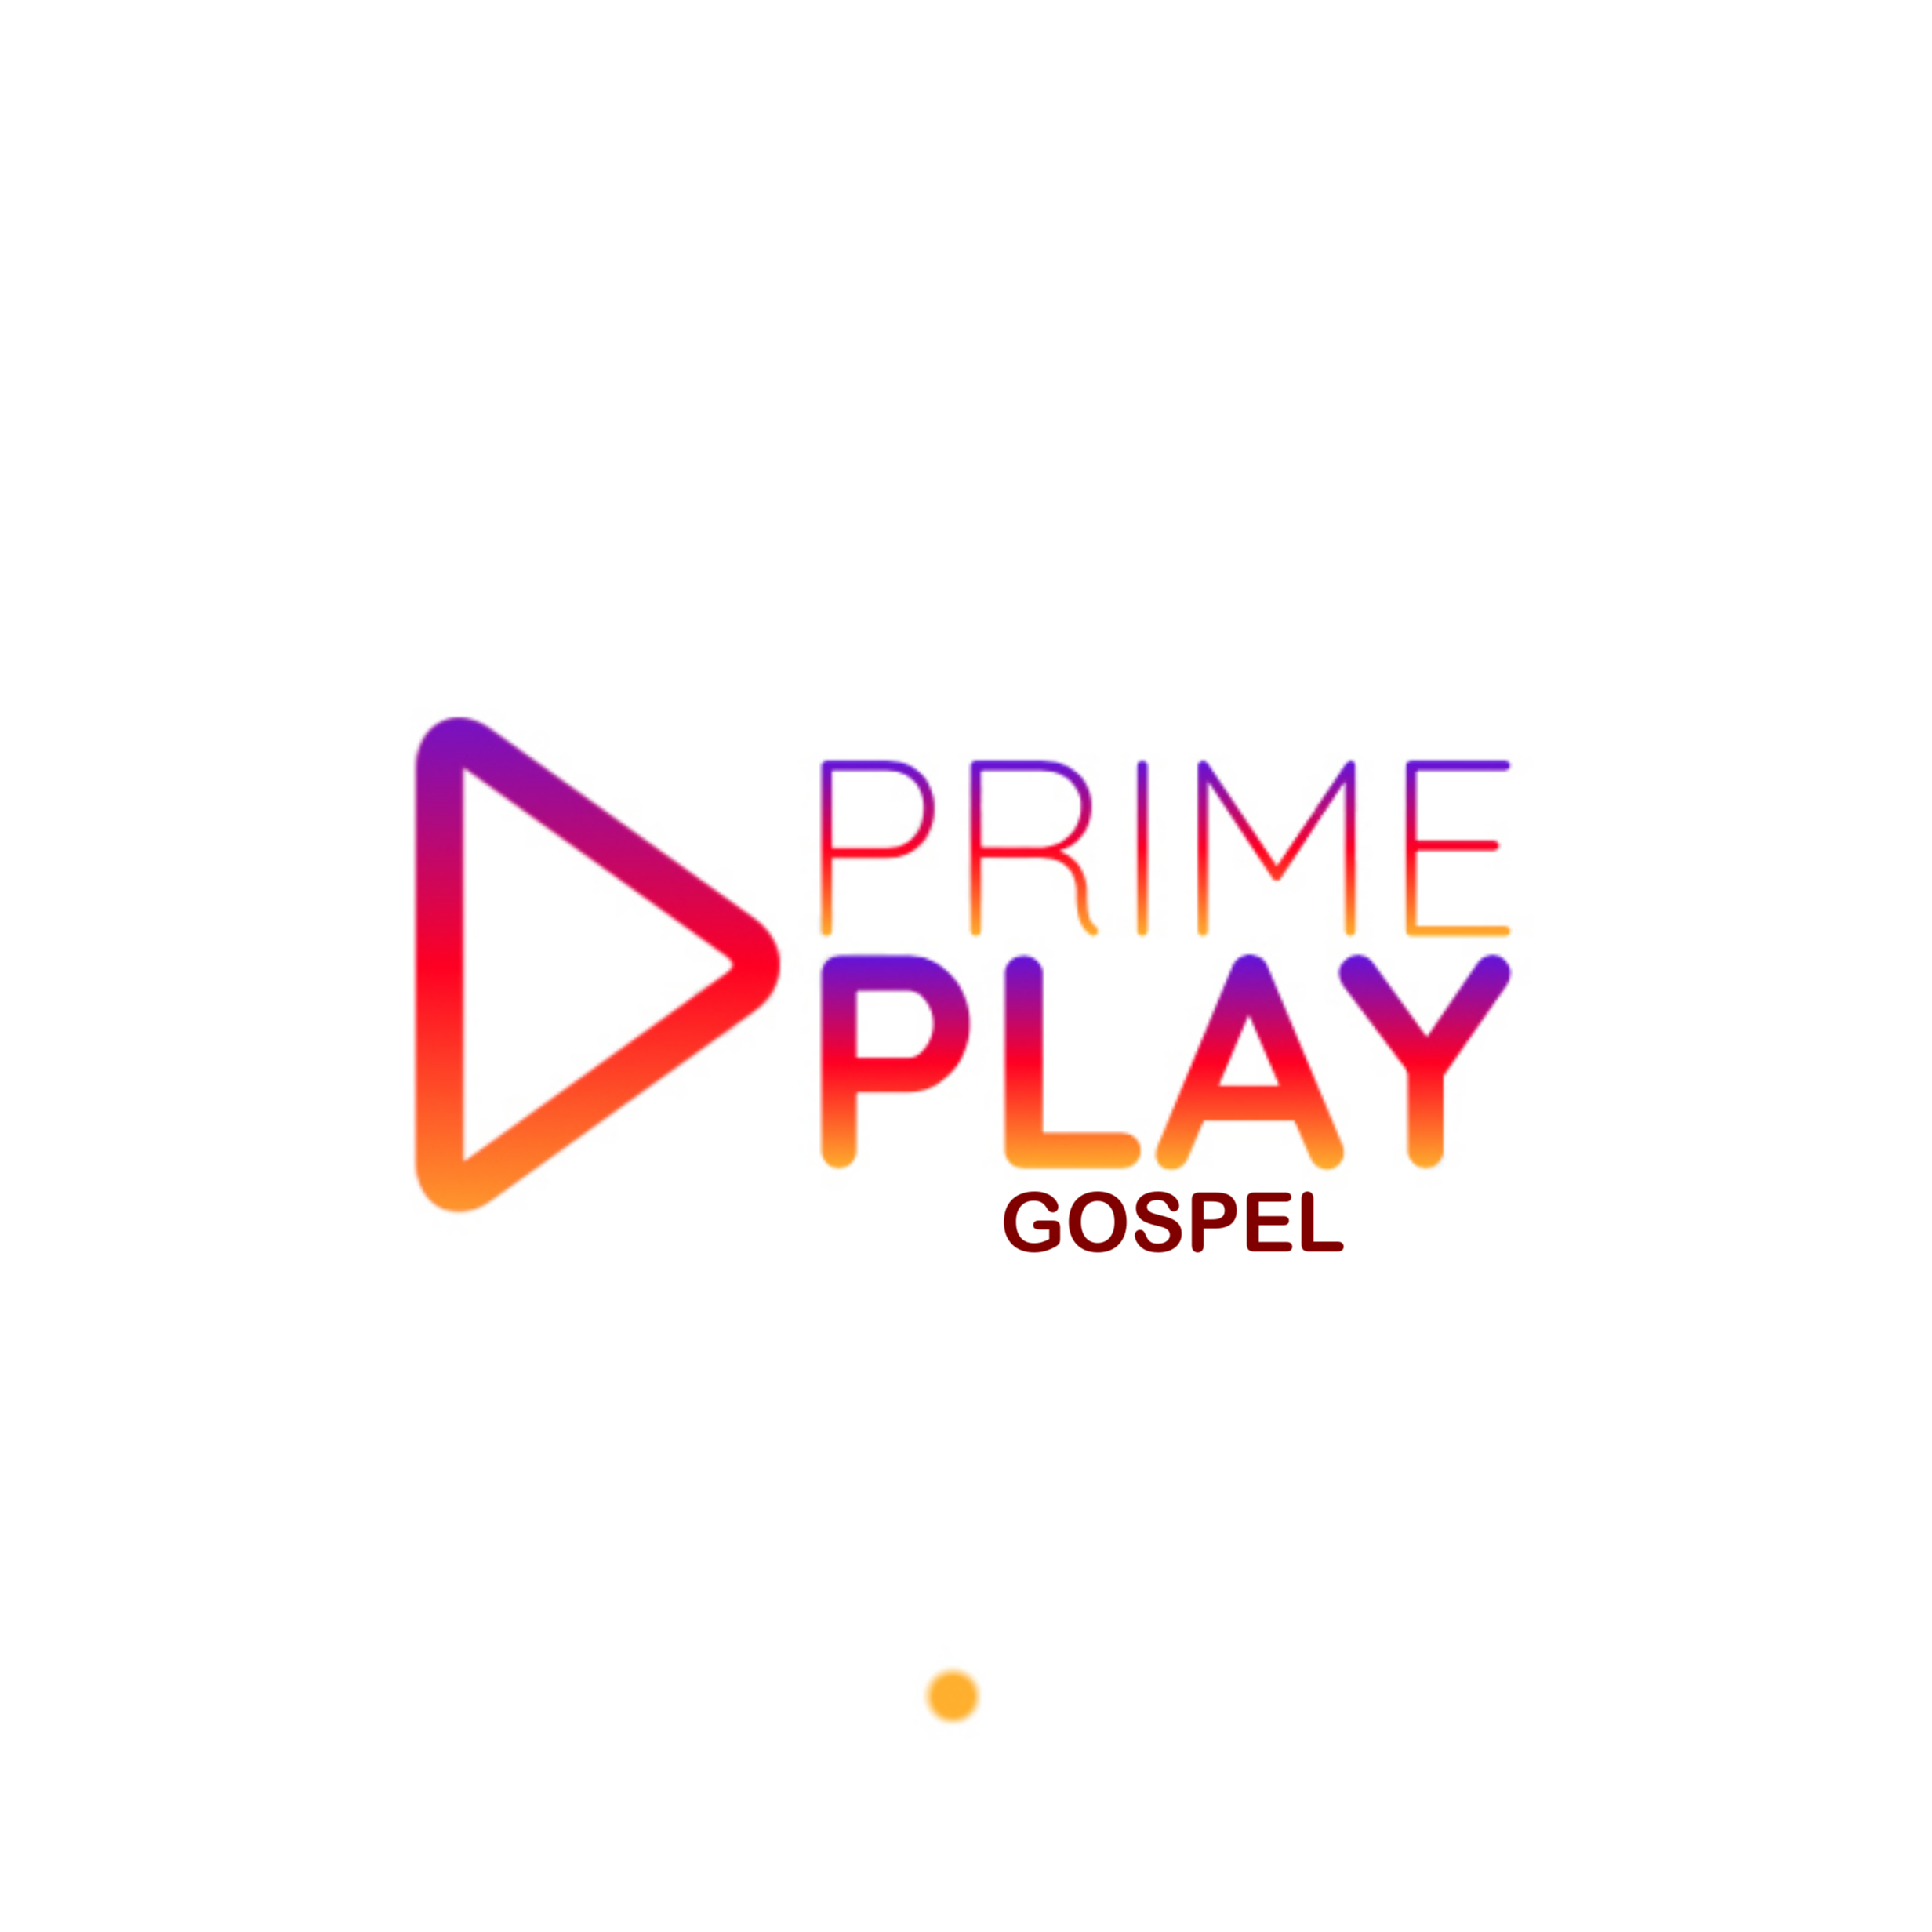 Prime Play GOSPEL